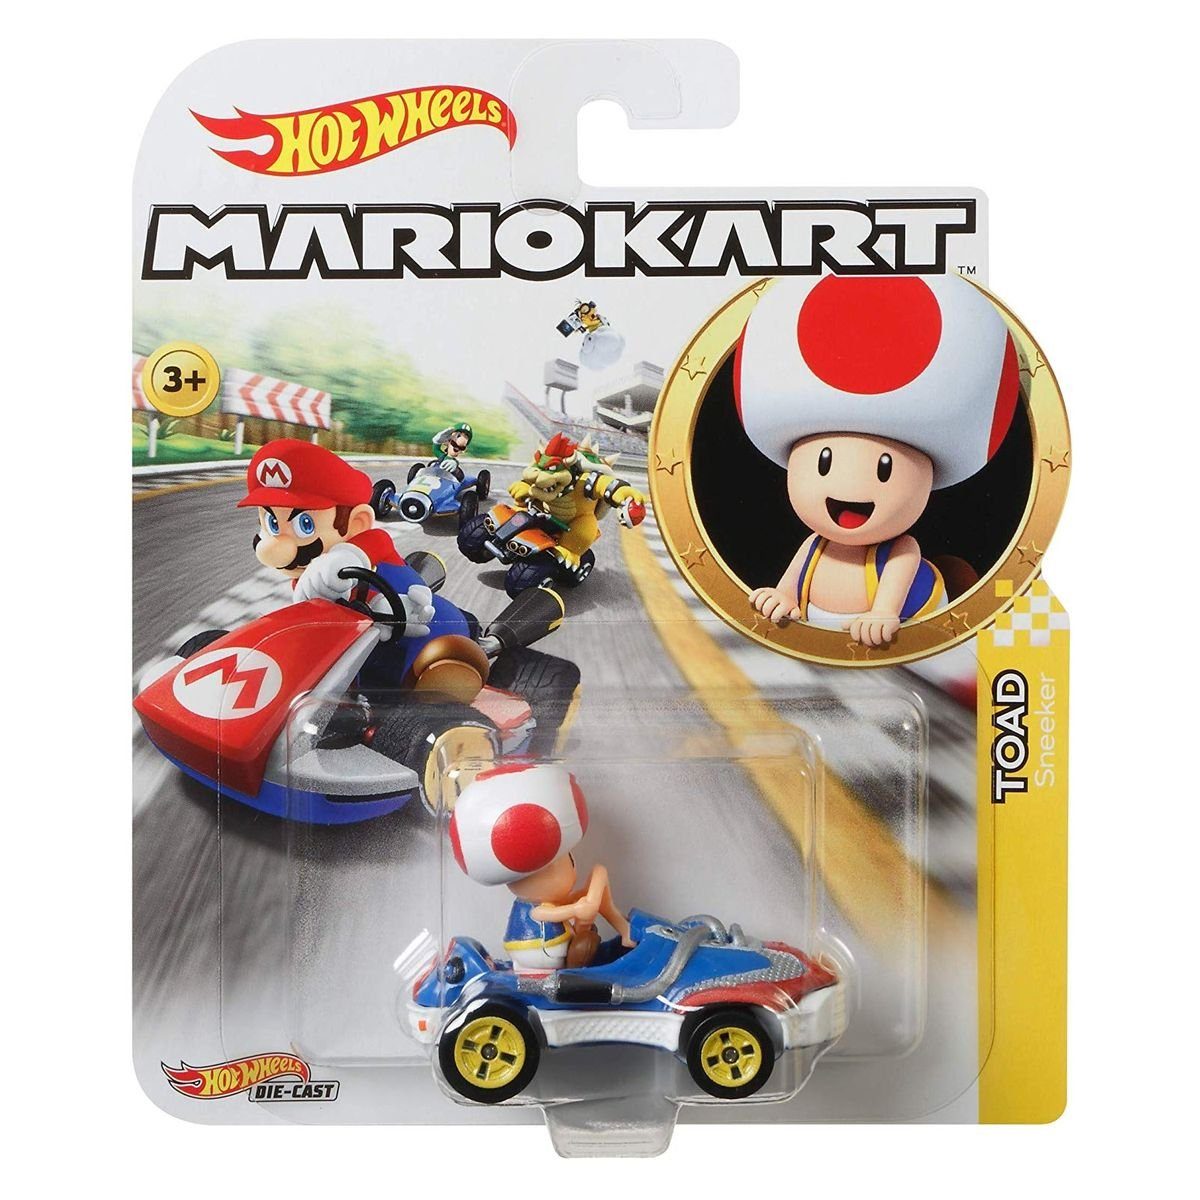 Mattel® Spielzeug-Rennwagen Mattel GBG30 - Hot Wheels - Mario Kart - Mini  Die-Cast Fahrzeug mit Fi